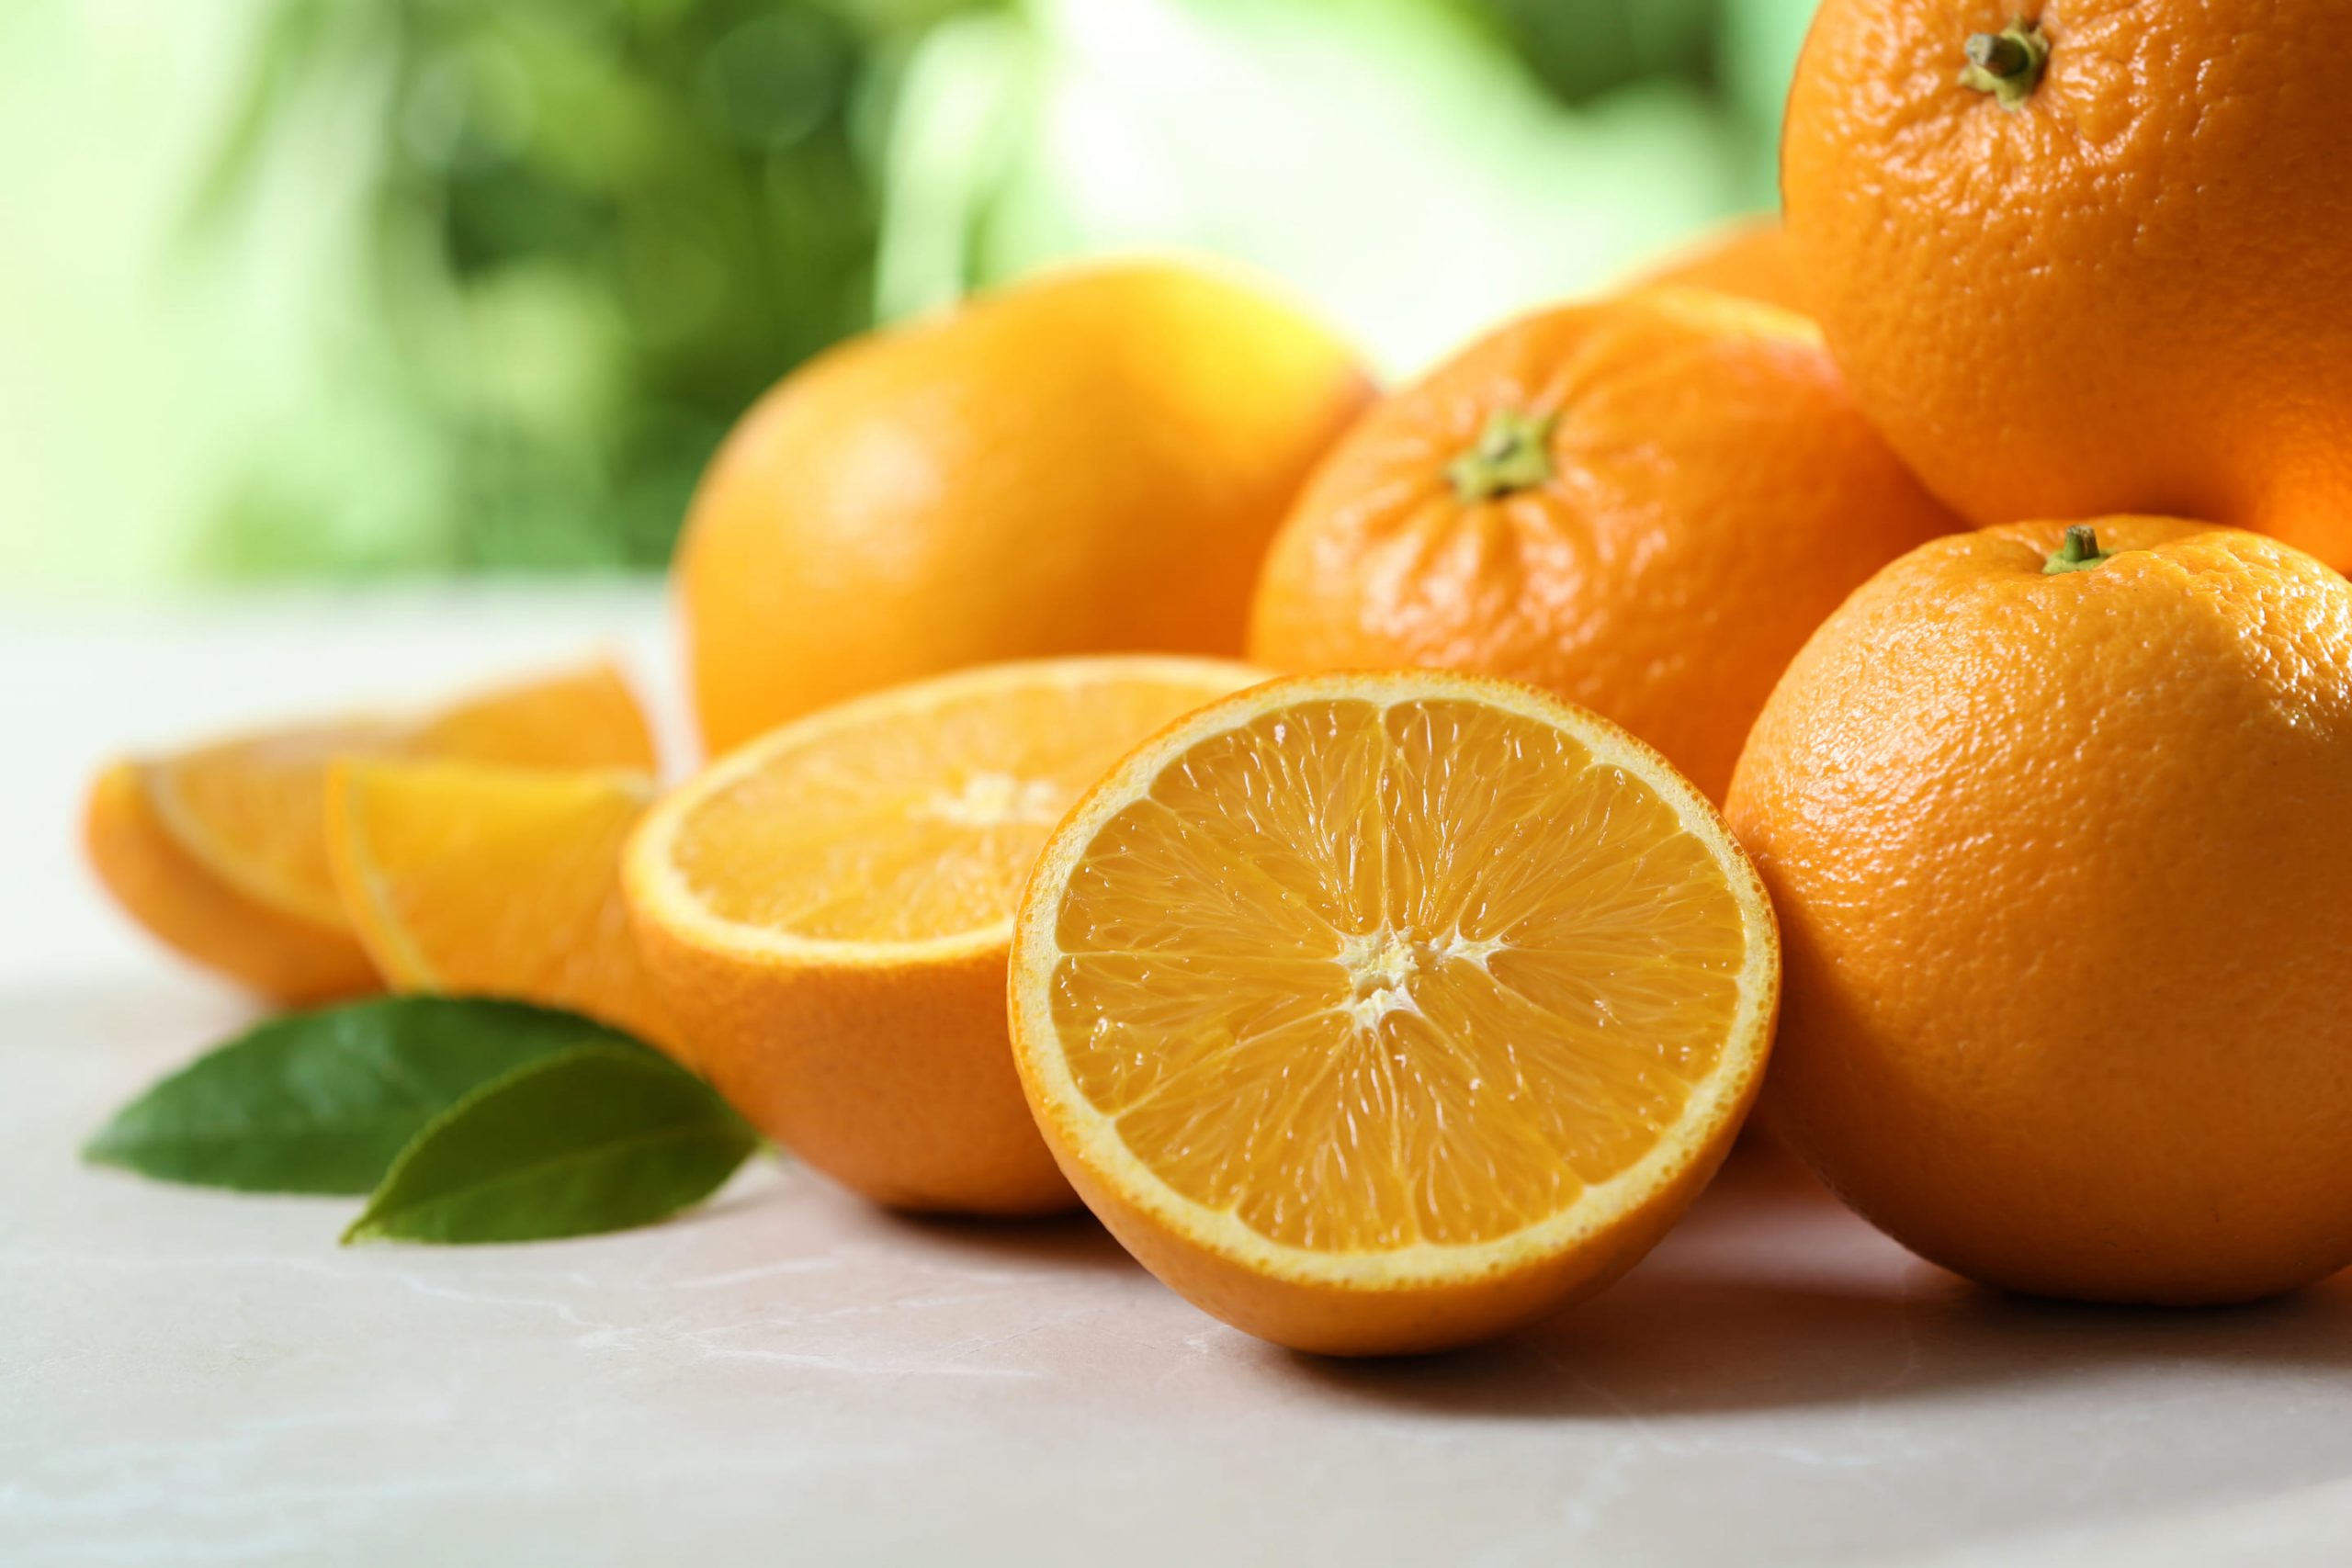 เฮสเพอริดิน มหัศจรรย์แห่งผลส้ม ลดความเสี่ยงต่อการเกิดโรคไม่ติดต่อเรื้อรัง (NCDs)